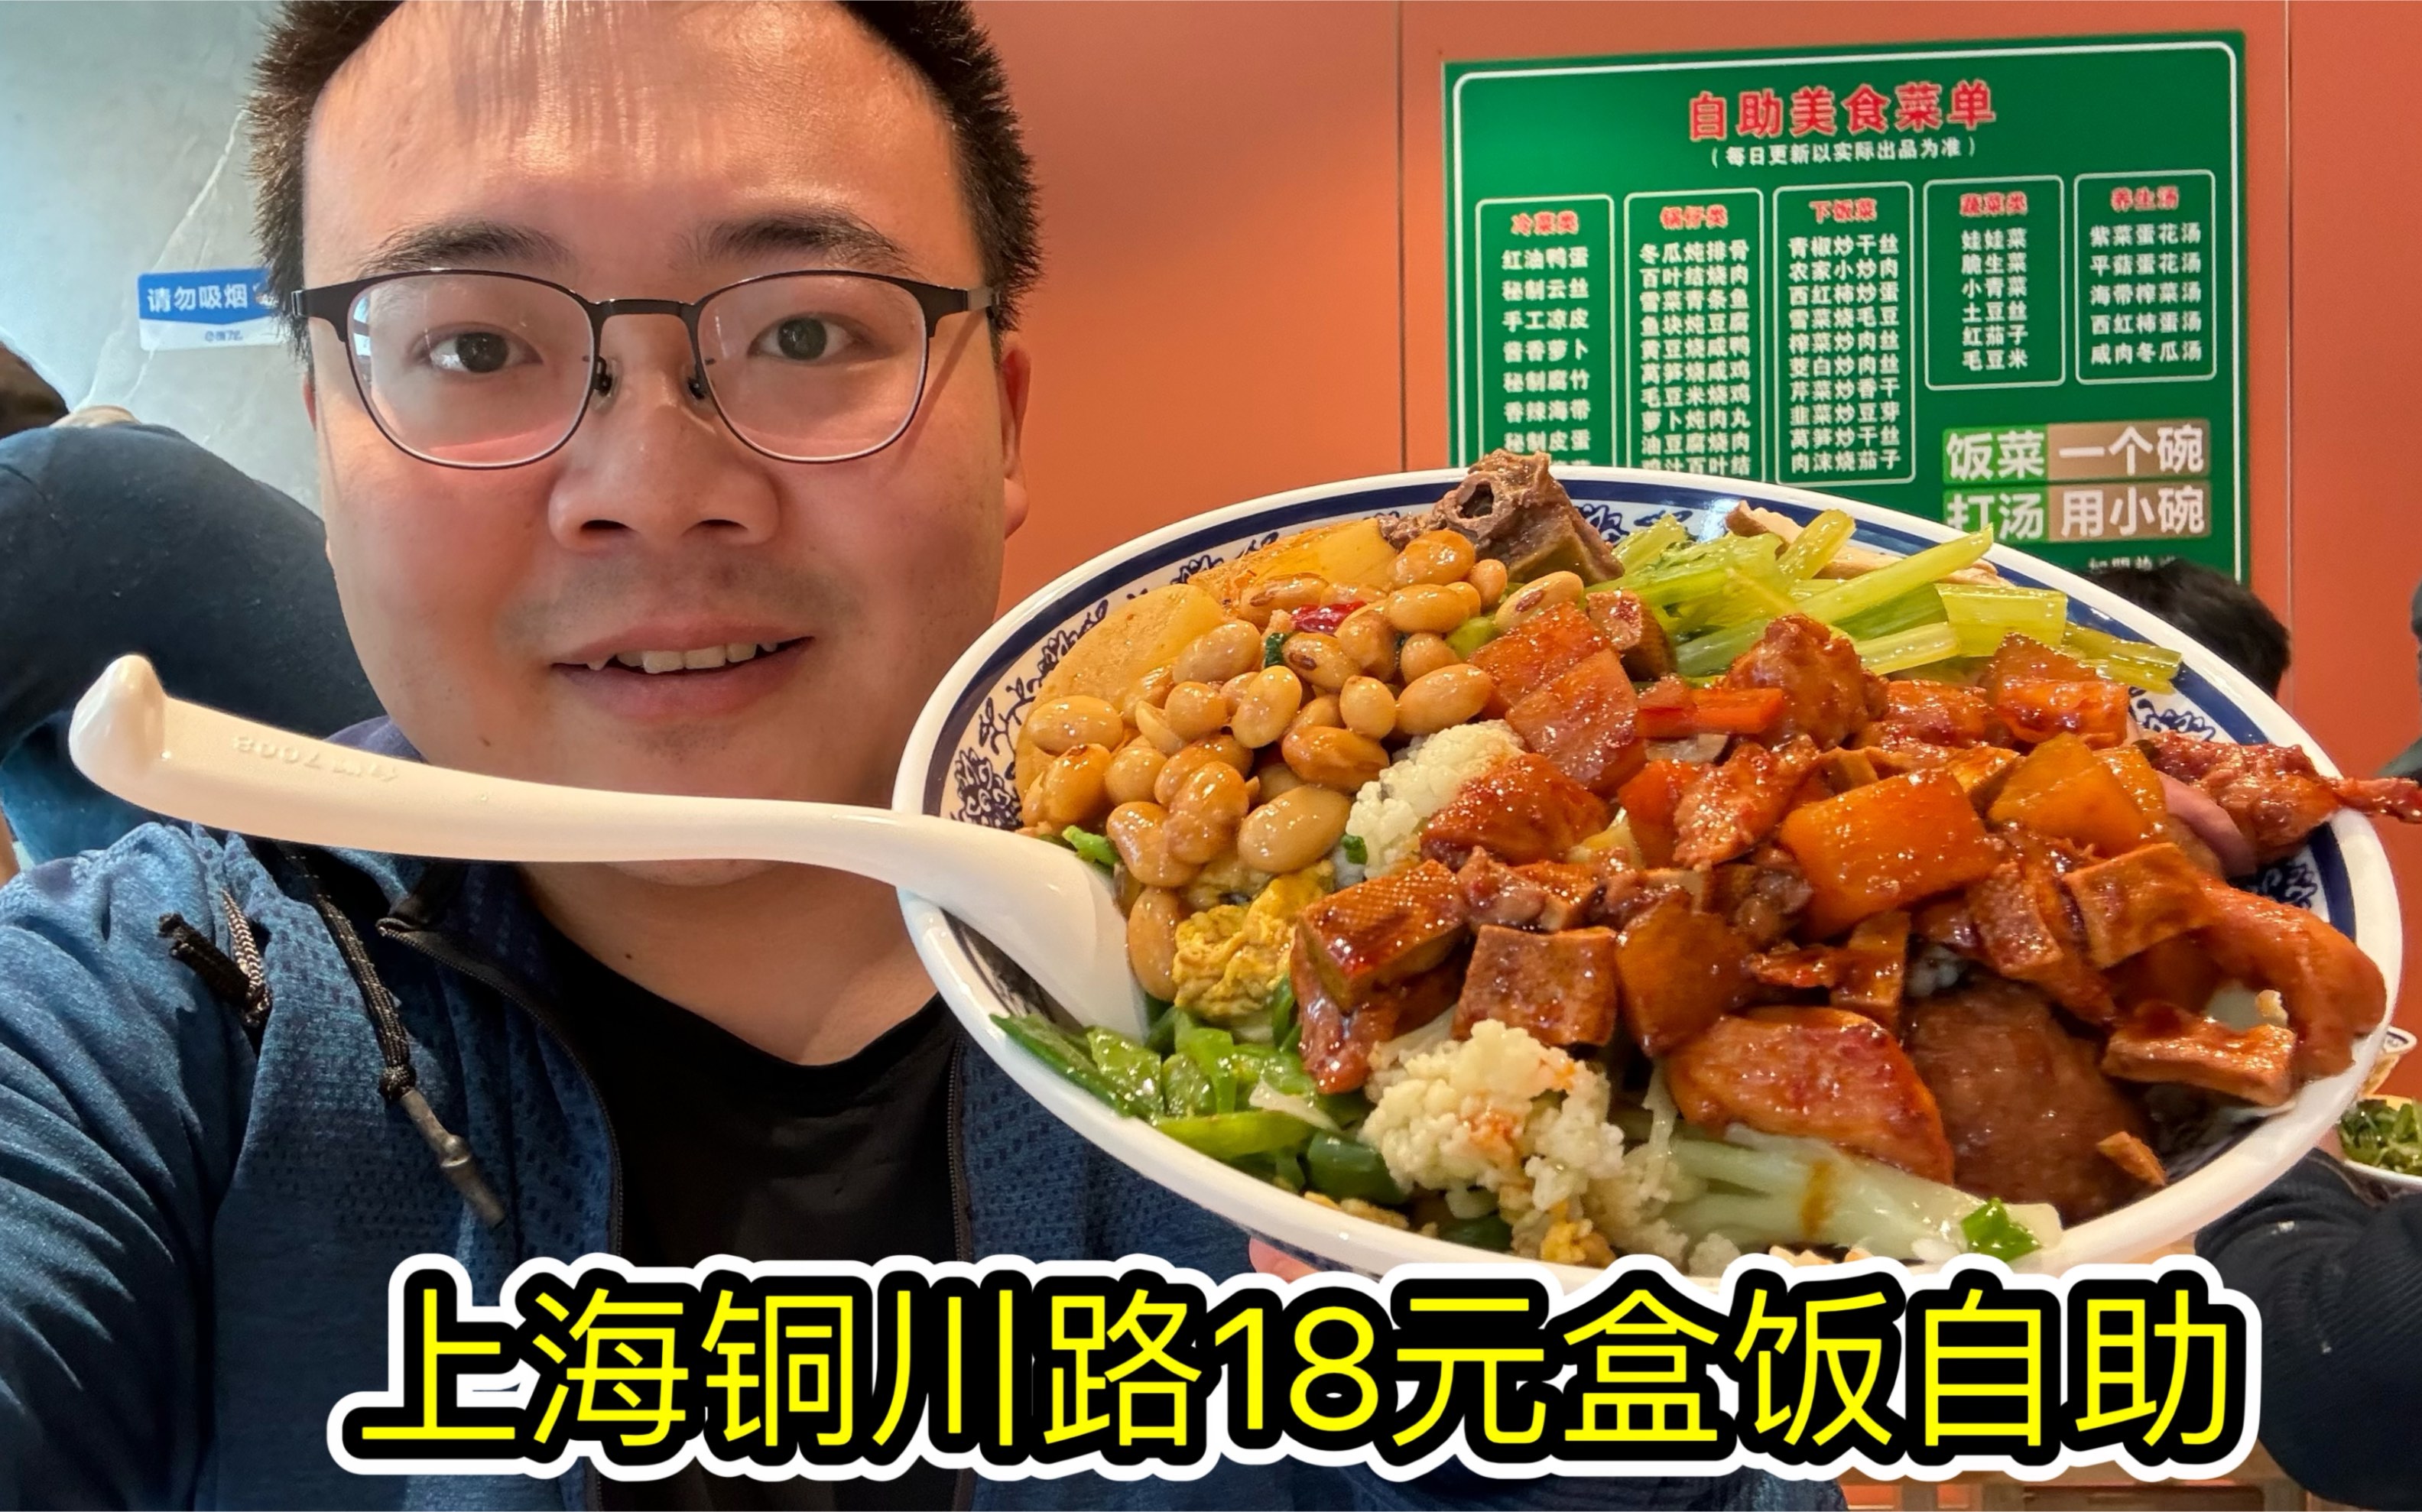 上海有什么好吃的江西菜？ - 知乎